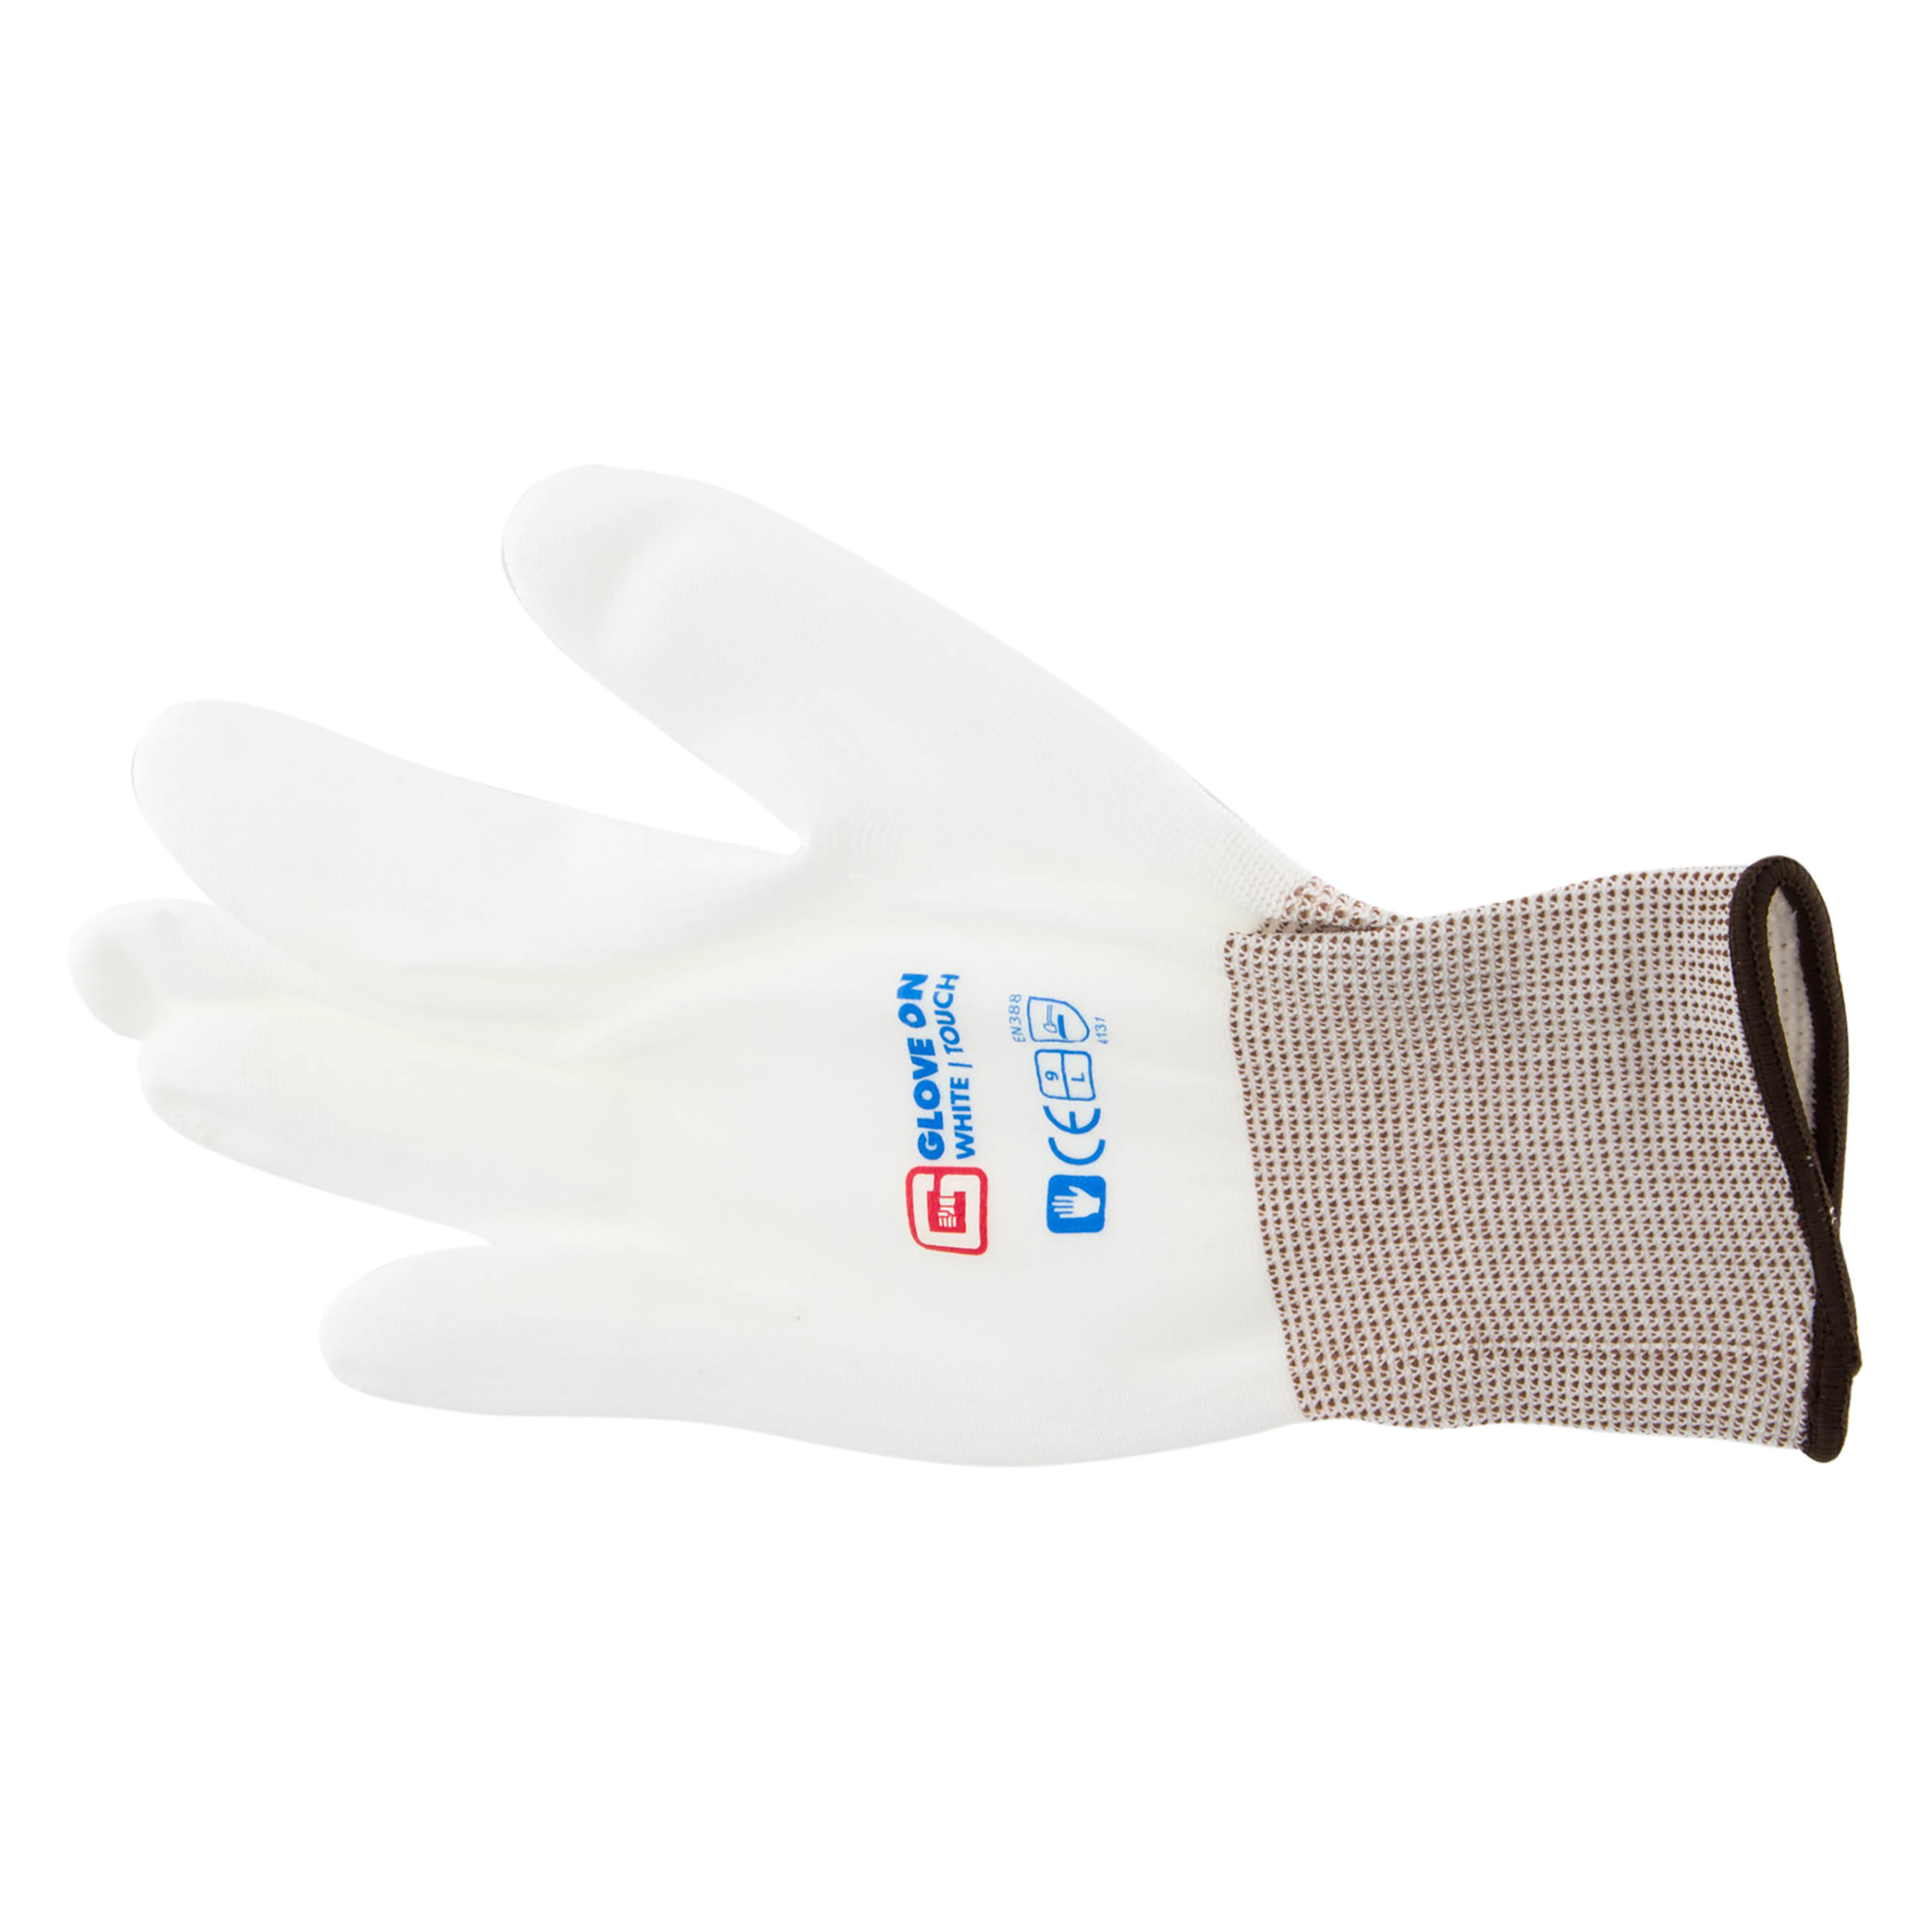 21.080.25 Glove On Touch werkhandschoen touch white - L